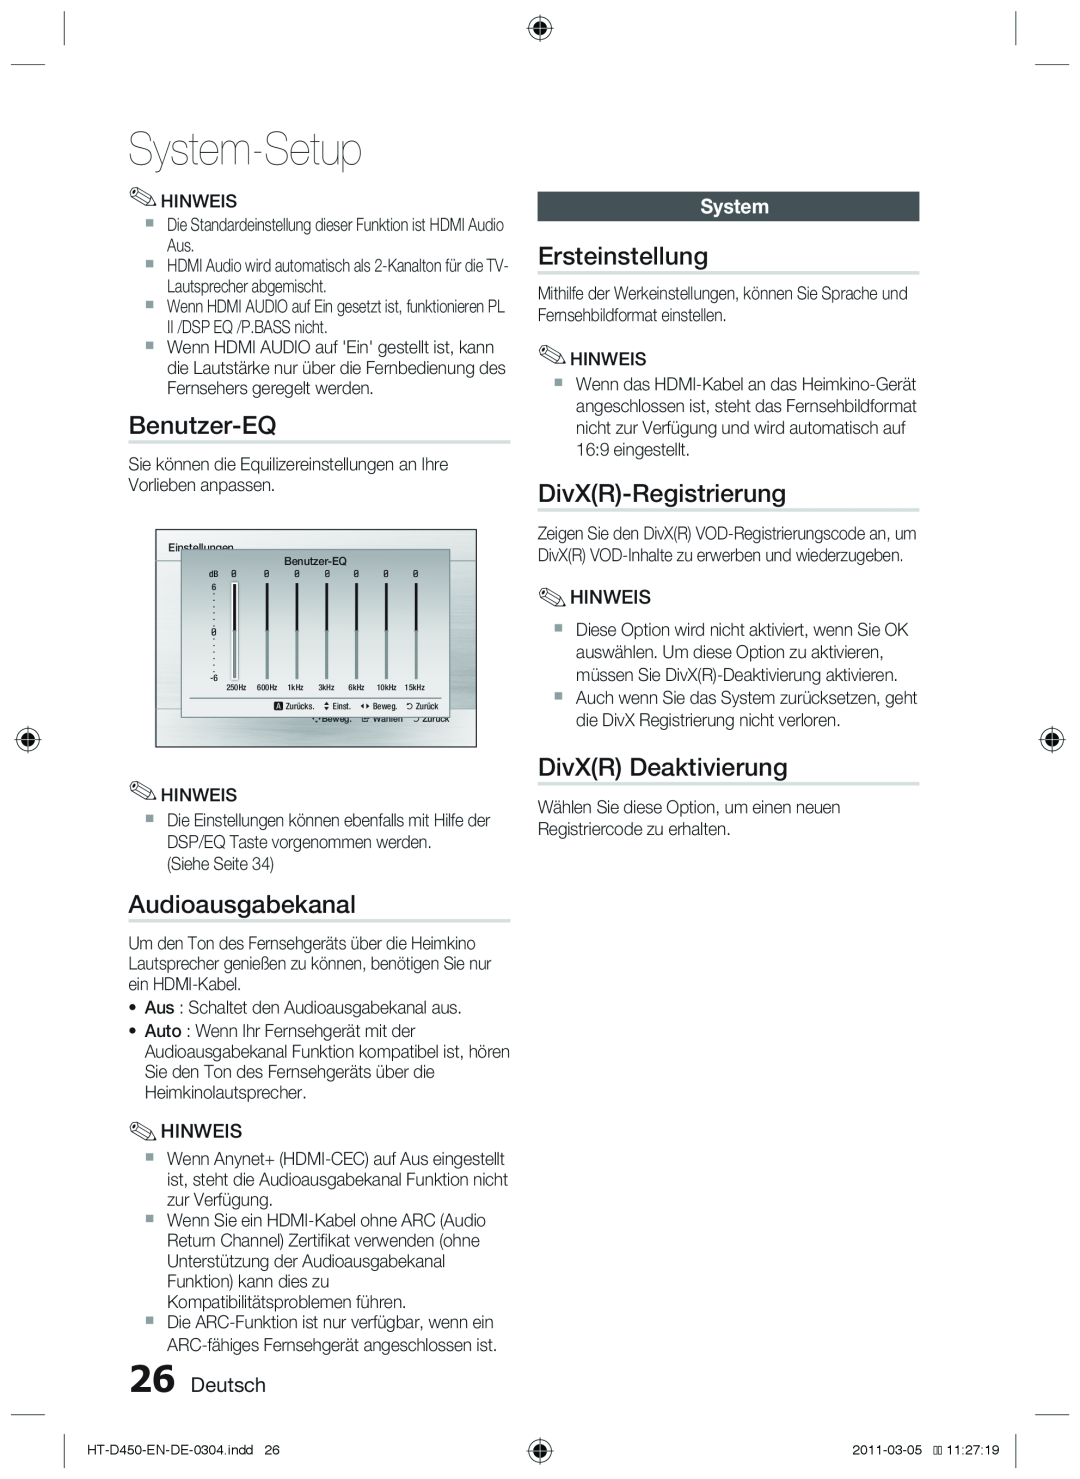 Samsung HT-D453 Benutzer-EQ, Audioausgabekanal, Ersteinstellung, DivXR-Registrierung, DivXR Deaktivierung, Deutsch, System 